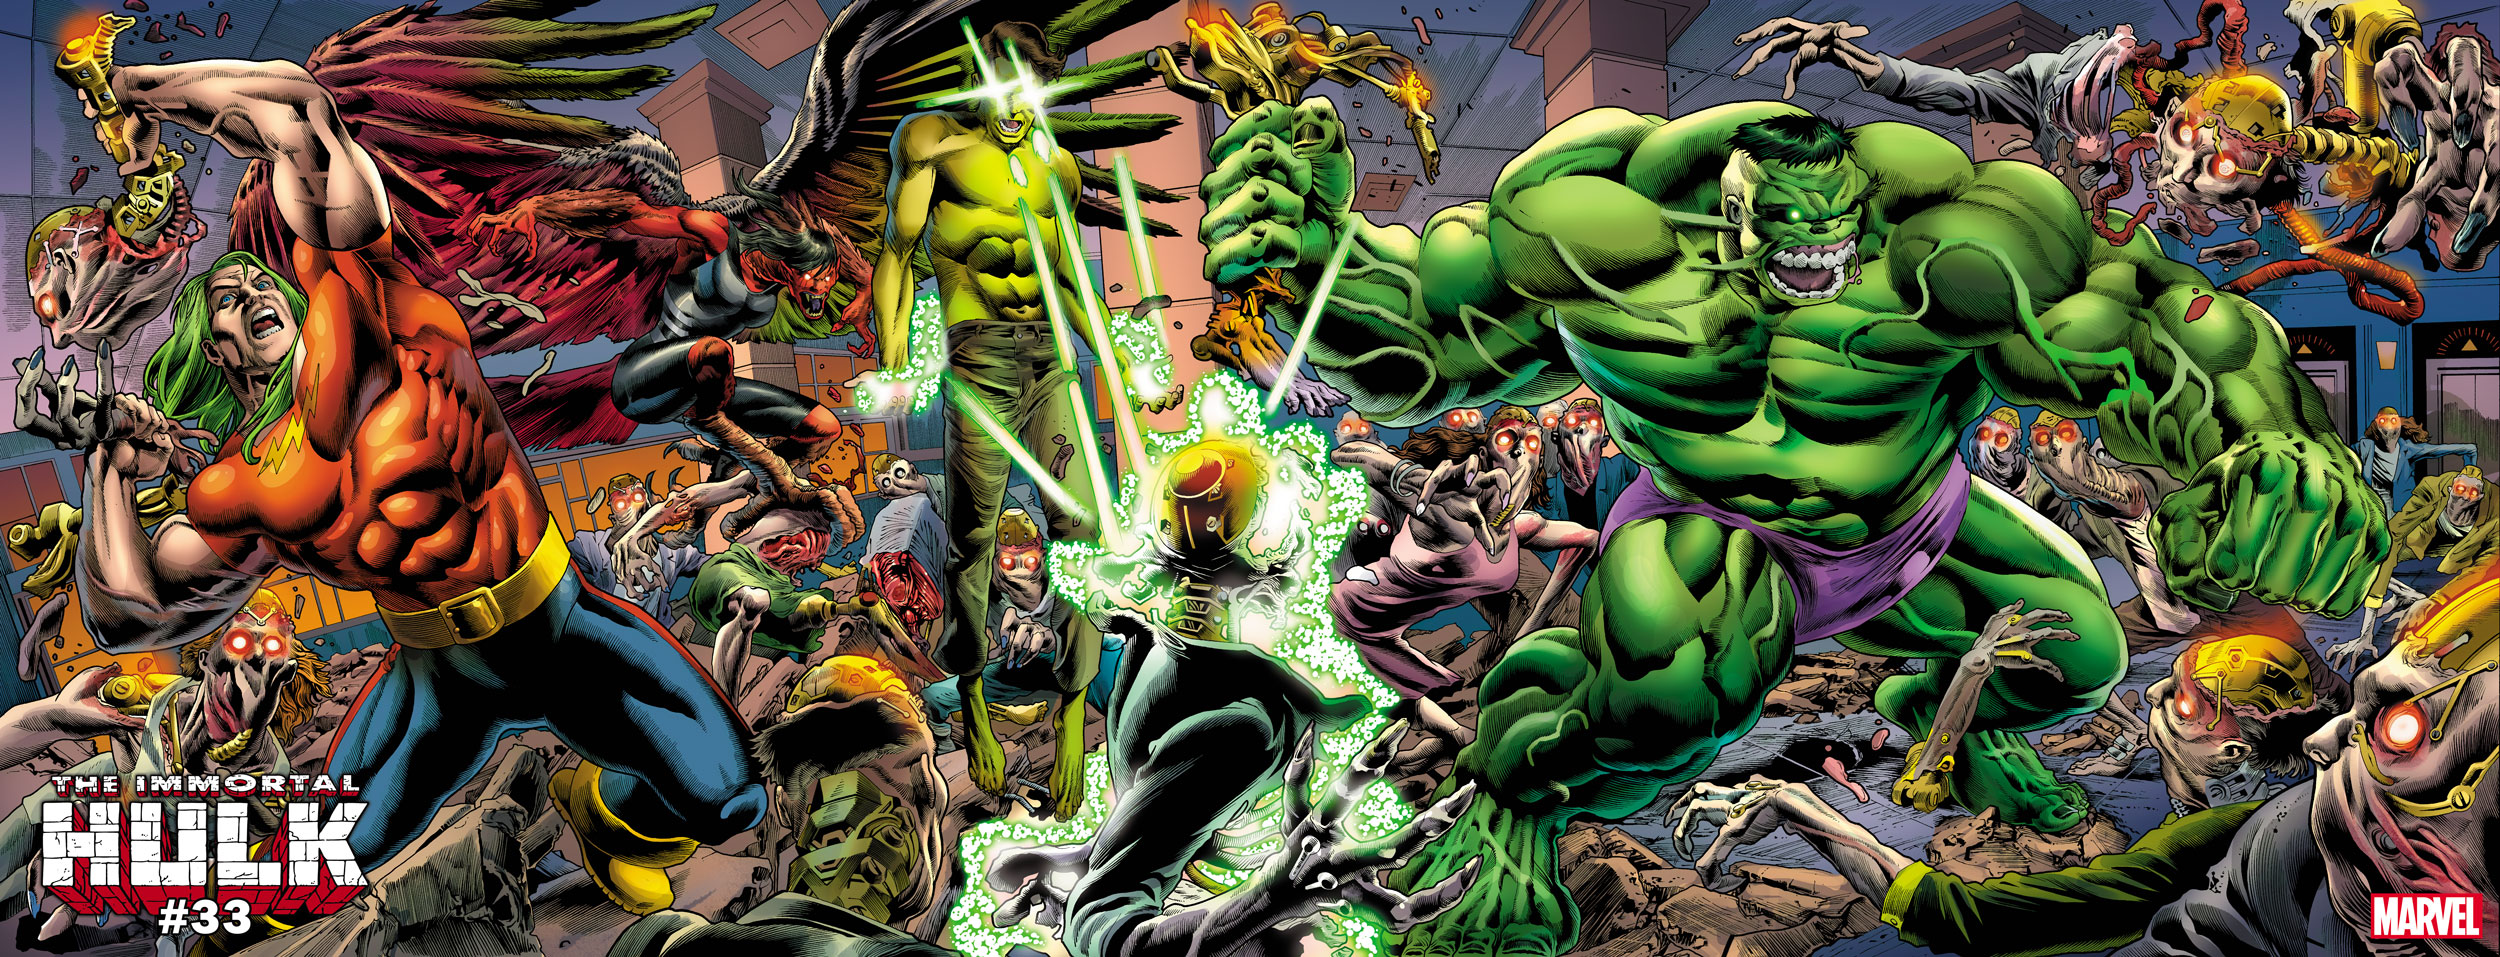 Marvel reveals Hulk vs. Xemnu in Steve Skroce's 'Immortal Hulk' #750 cover